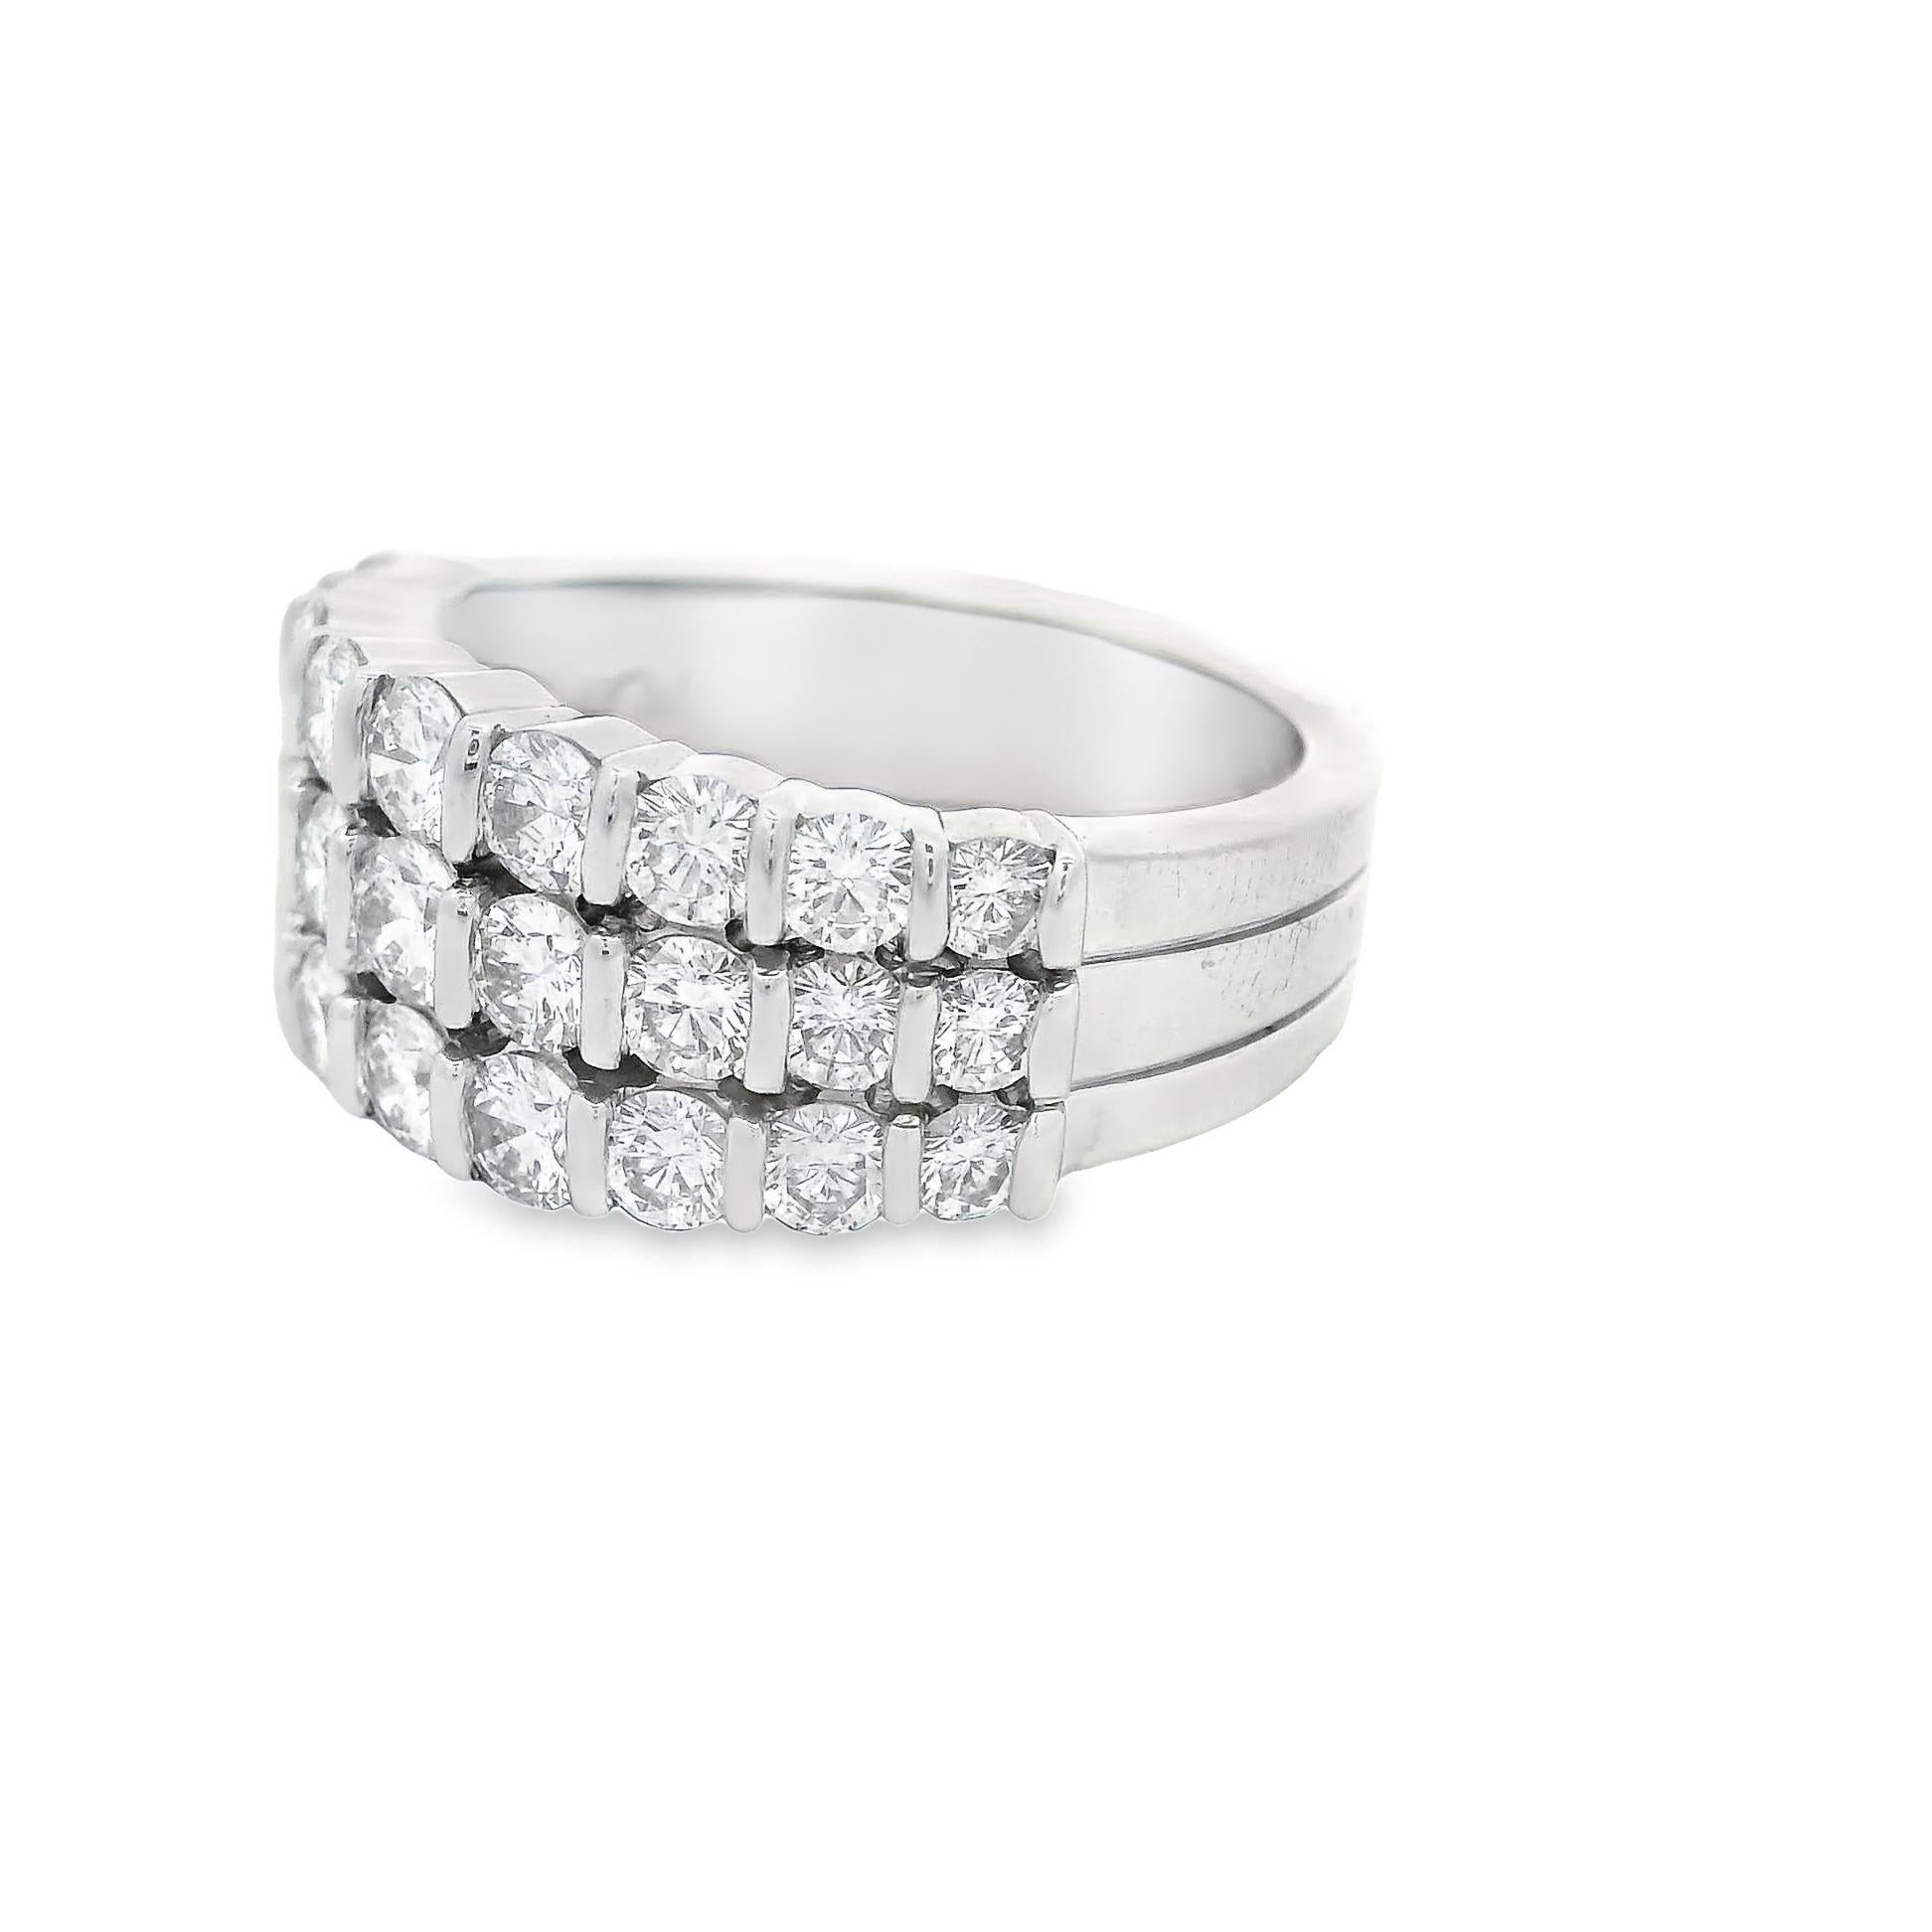 Ein schöner Ring des Designers Gemlok mit 1,84 Karat Diamanten im Brillantschliff. Drei Reihen funkelnder Diamanten verleihen einem schimmernden Ring aus Platin Minimalismus und Eleganz. Insgesamt gibt es 27 Diamanten, die aufgrund des feinen